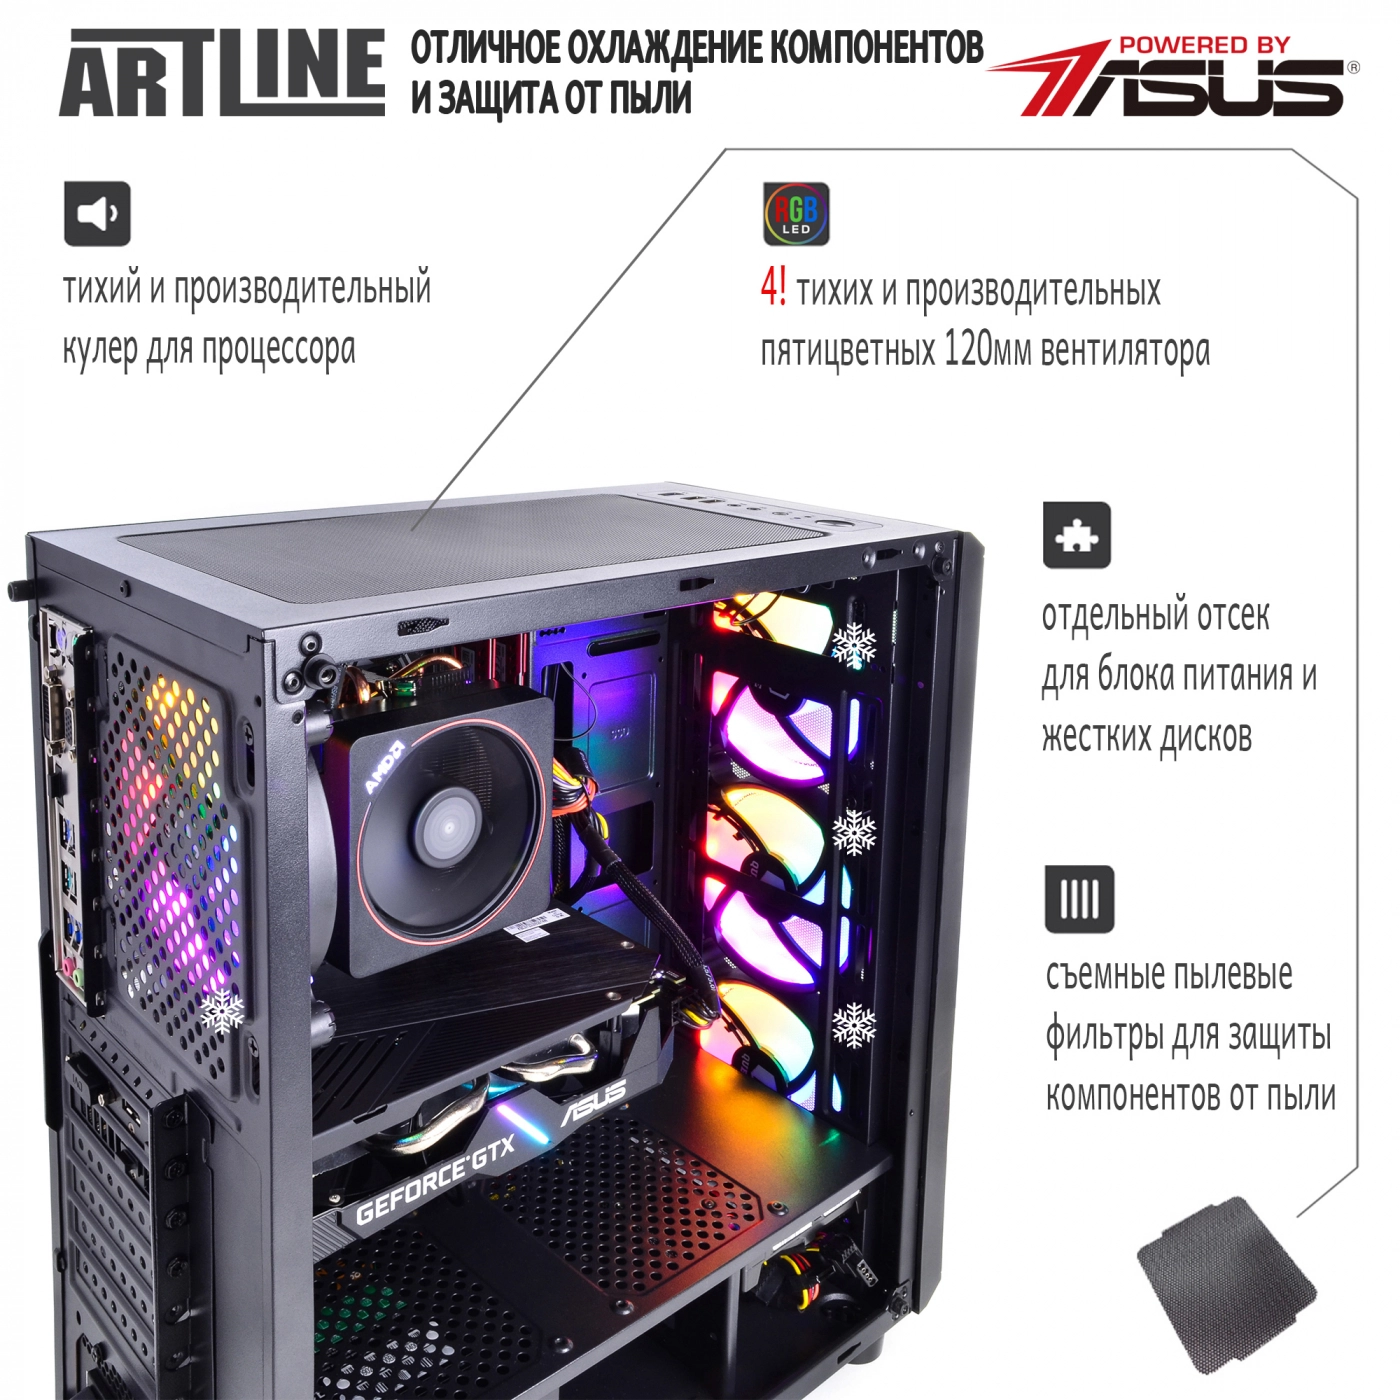 Купить Компьютер ARTLINE Gaming X63v09 - фото 3